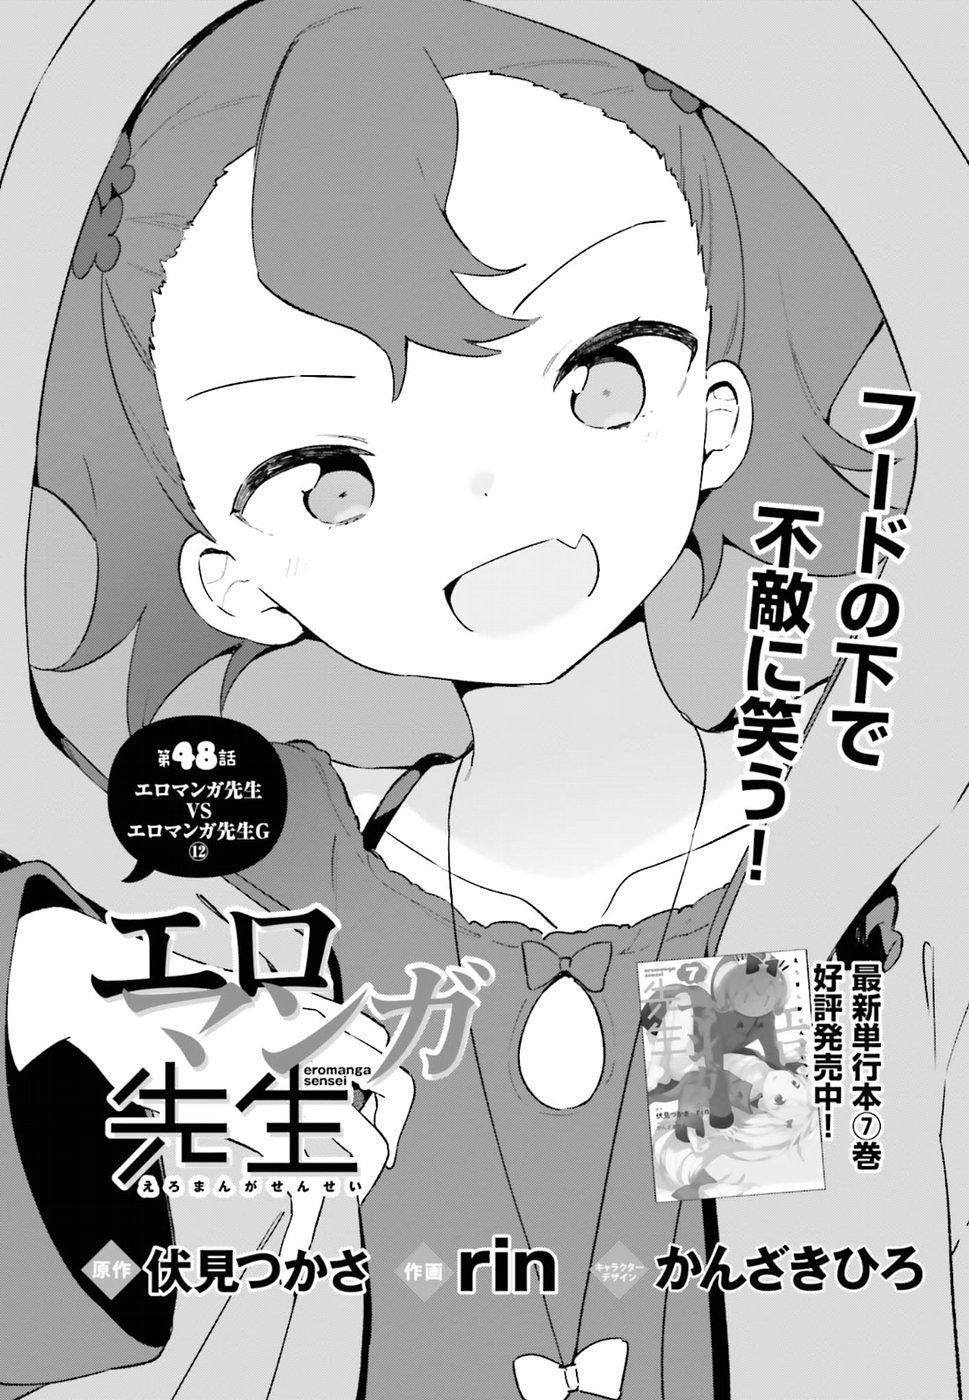 Ero Manga Sensei - Chapter 48 - Page 1